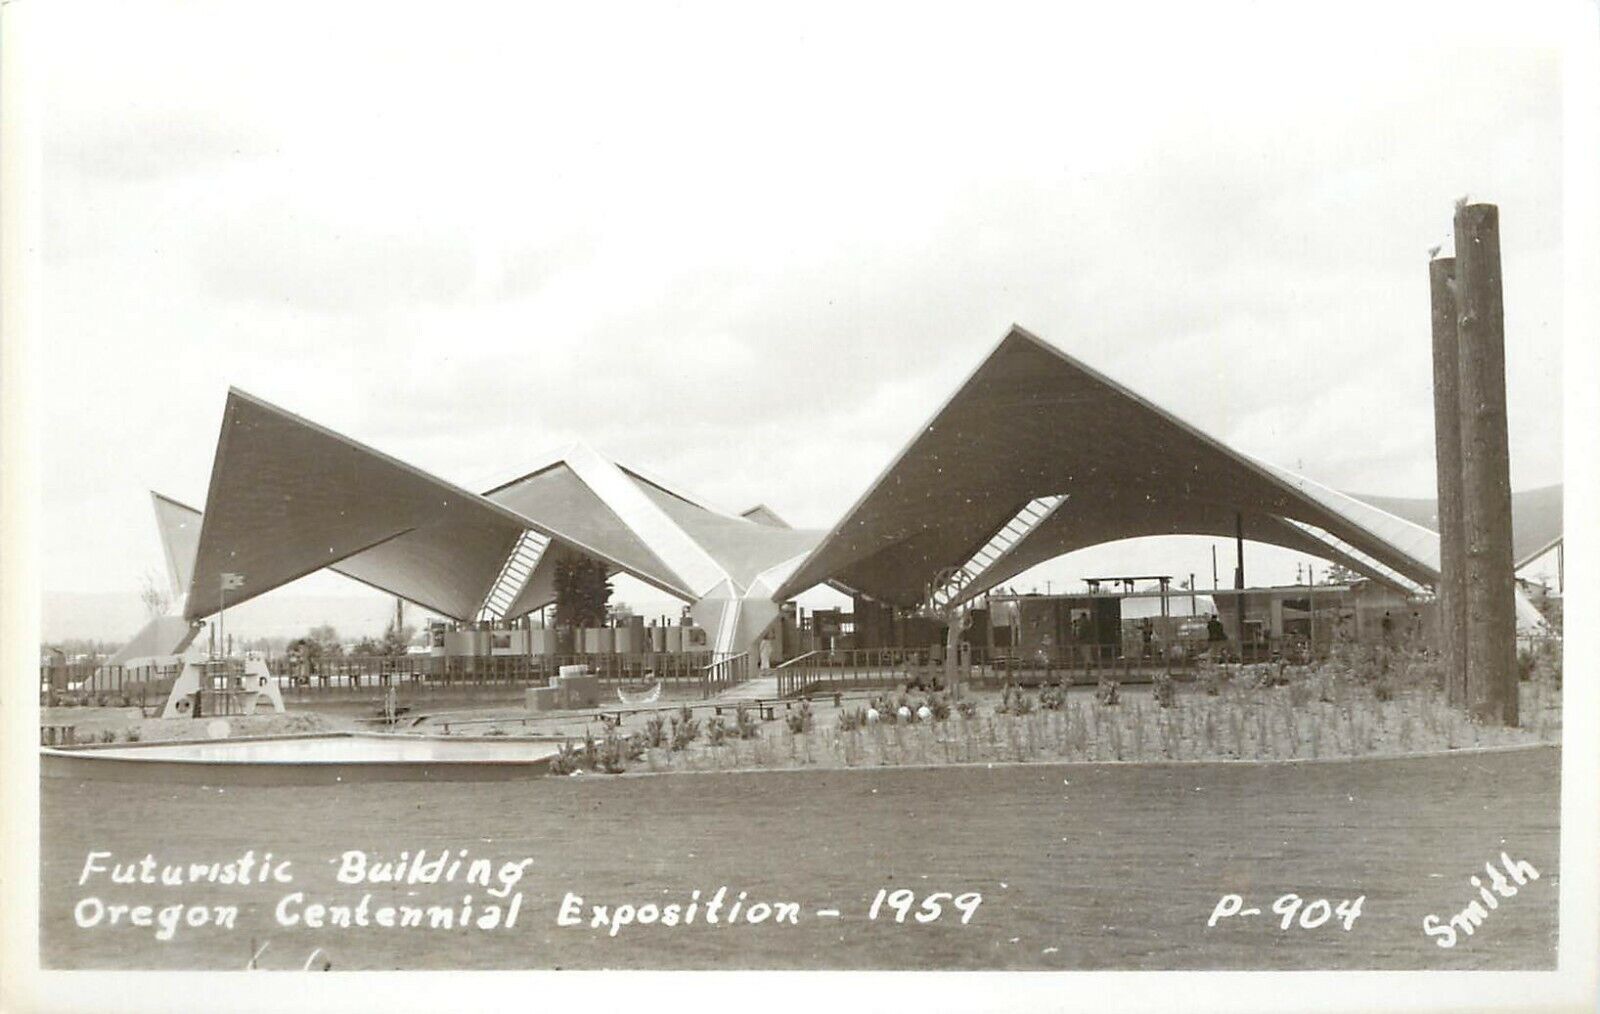 1959 RPPC P-904 Oregon Centennial Exposition Portland Futuristic Building, Smith